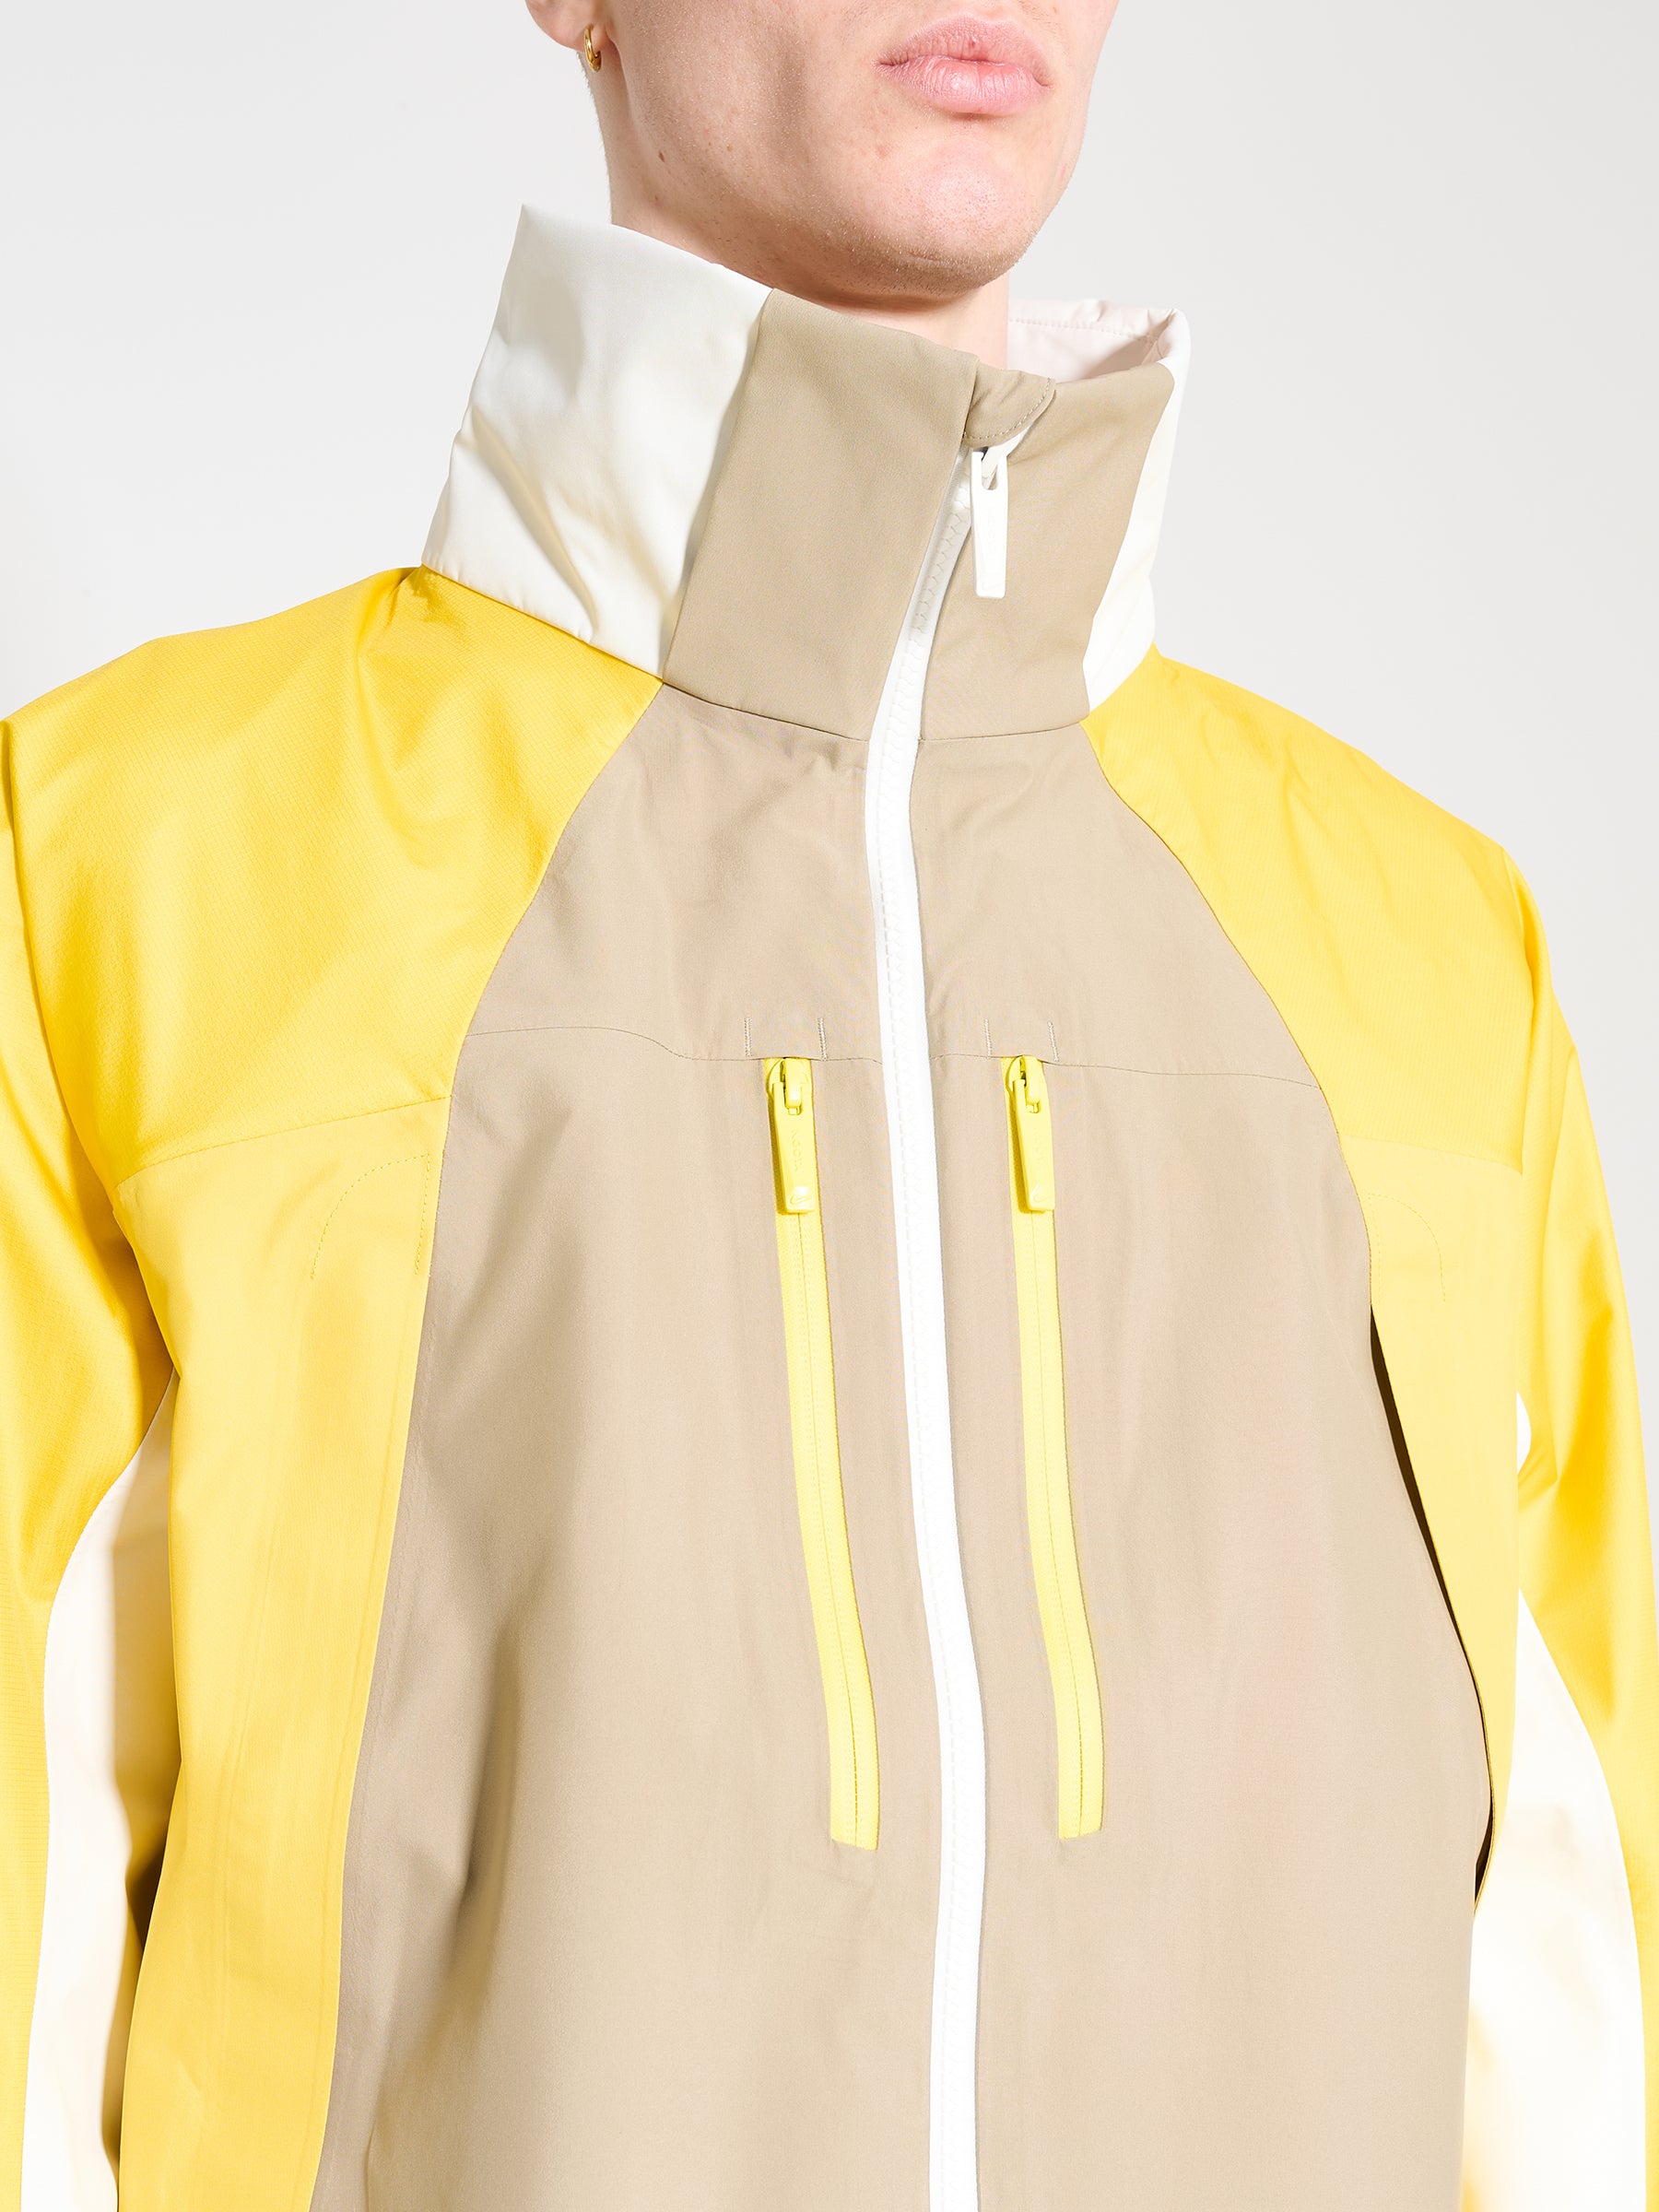 Nike NOCTA L’Art M Nrg Tech Jacket Hd Khaki / Vivid Sulfur